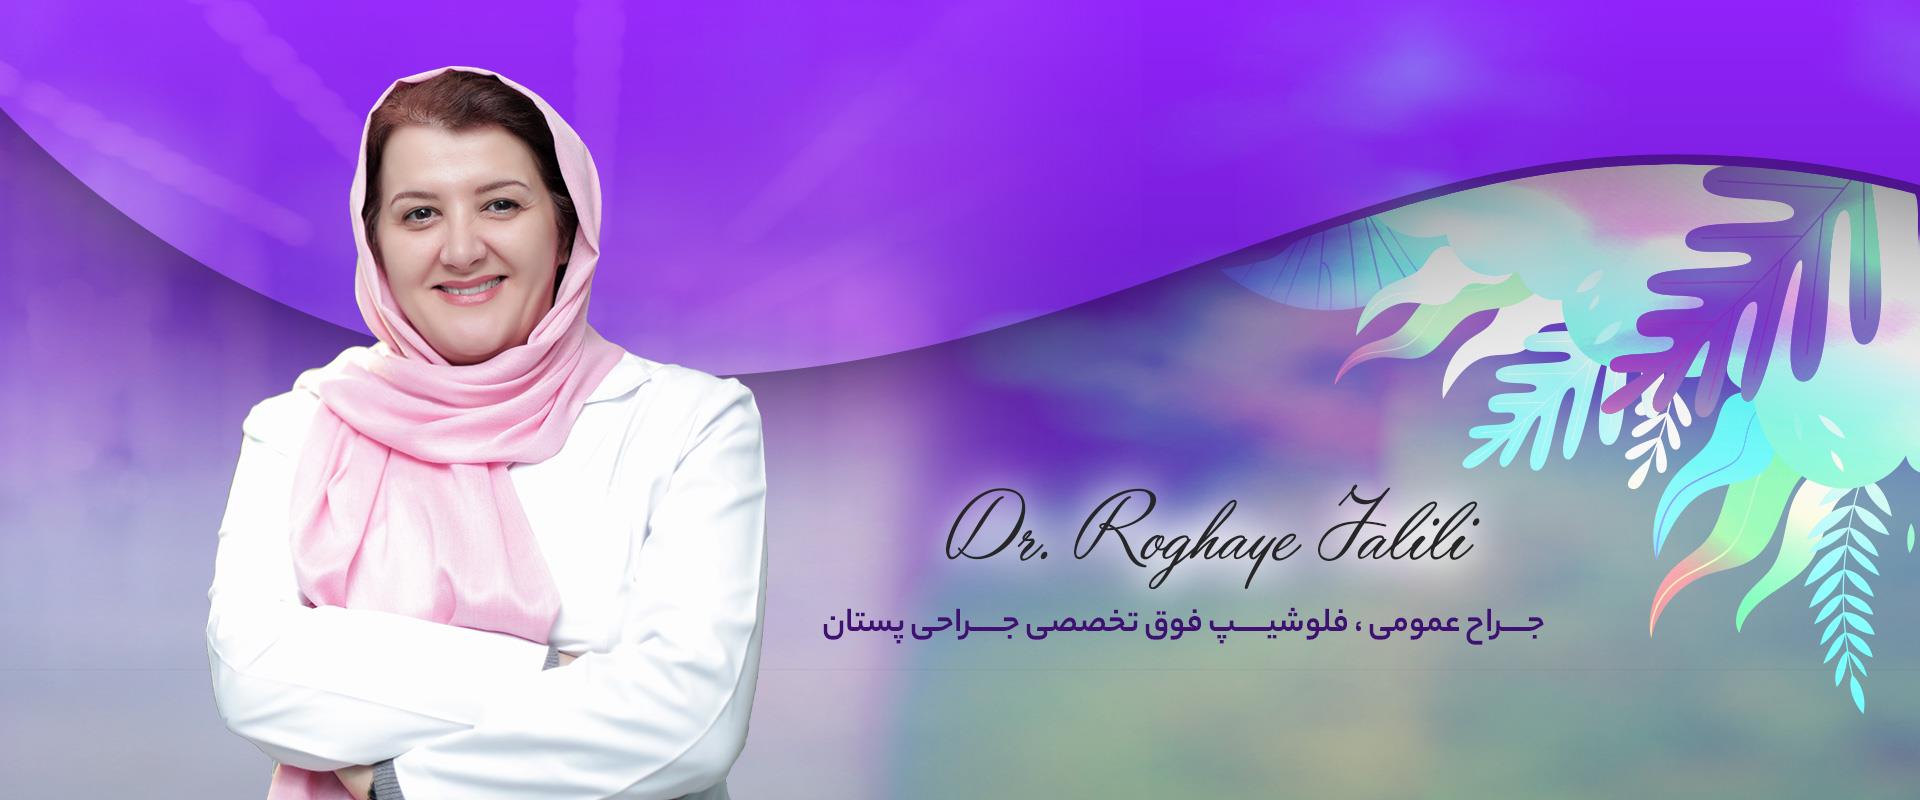 دکتر رقیه جلیلی فوق تخصص جراحی سینه در تهران